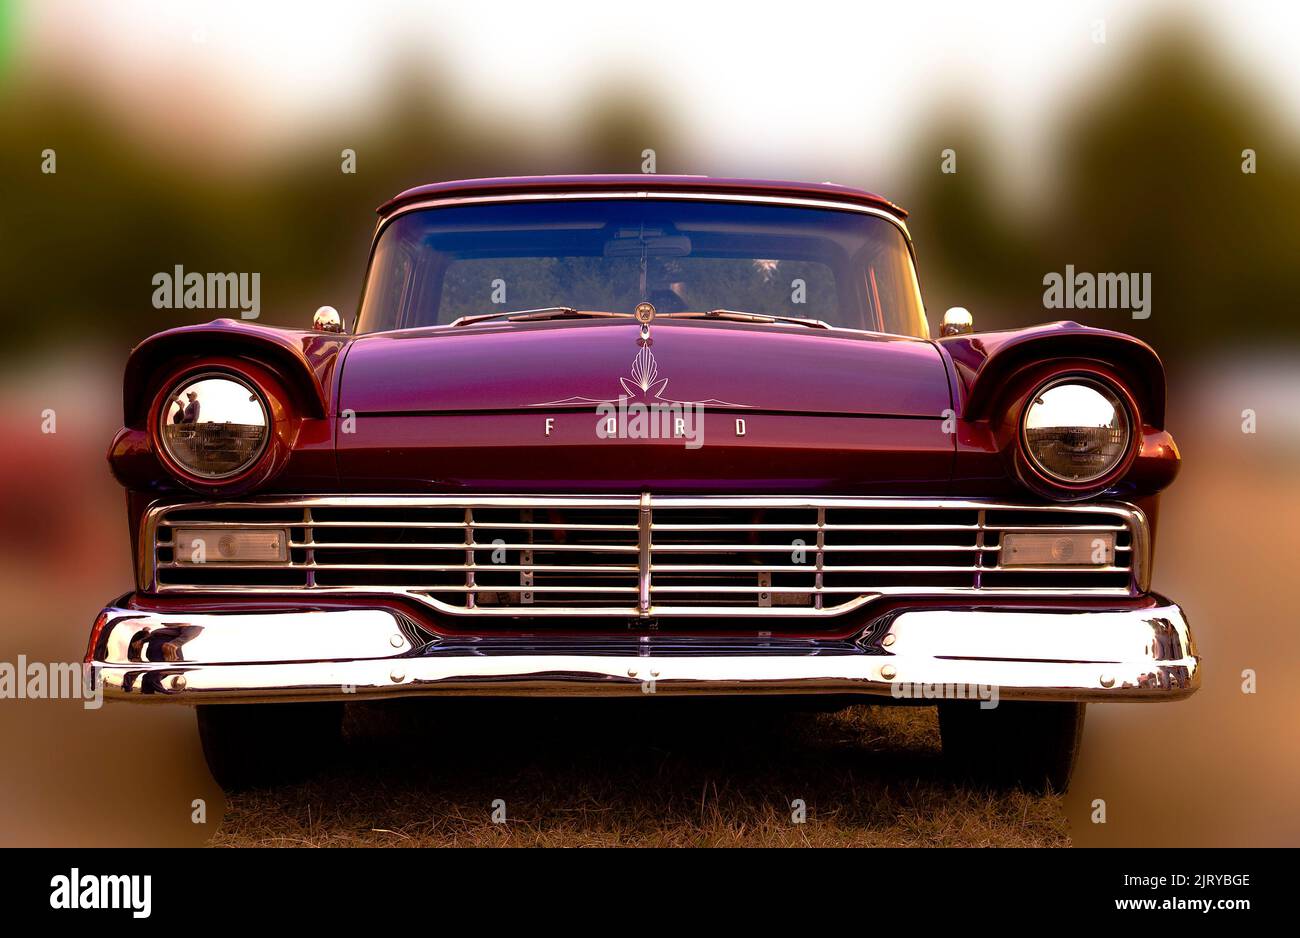 Le travail de calandre Ranchero 1957 de Ford est un exemple de la forme d'art automobile américaine qui est devenue populaire dans les années 1950 et 1960. Banque D'Images